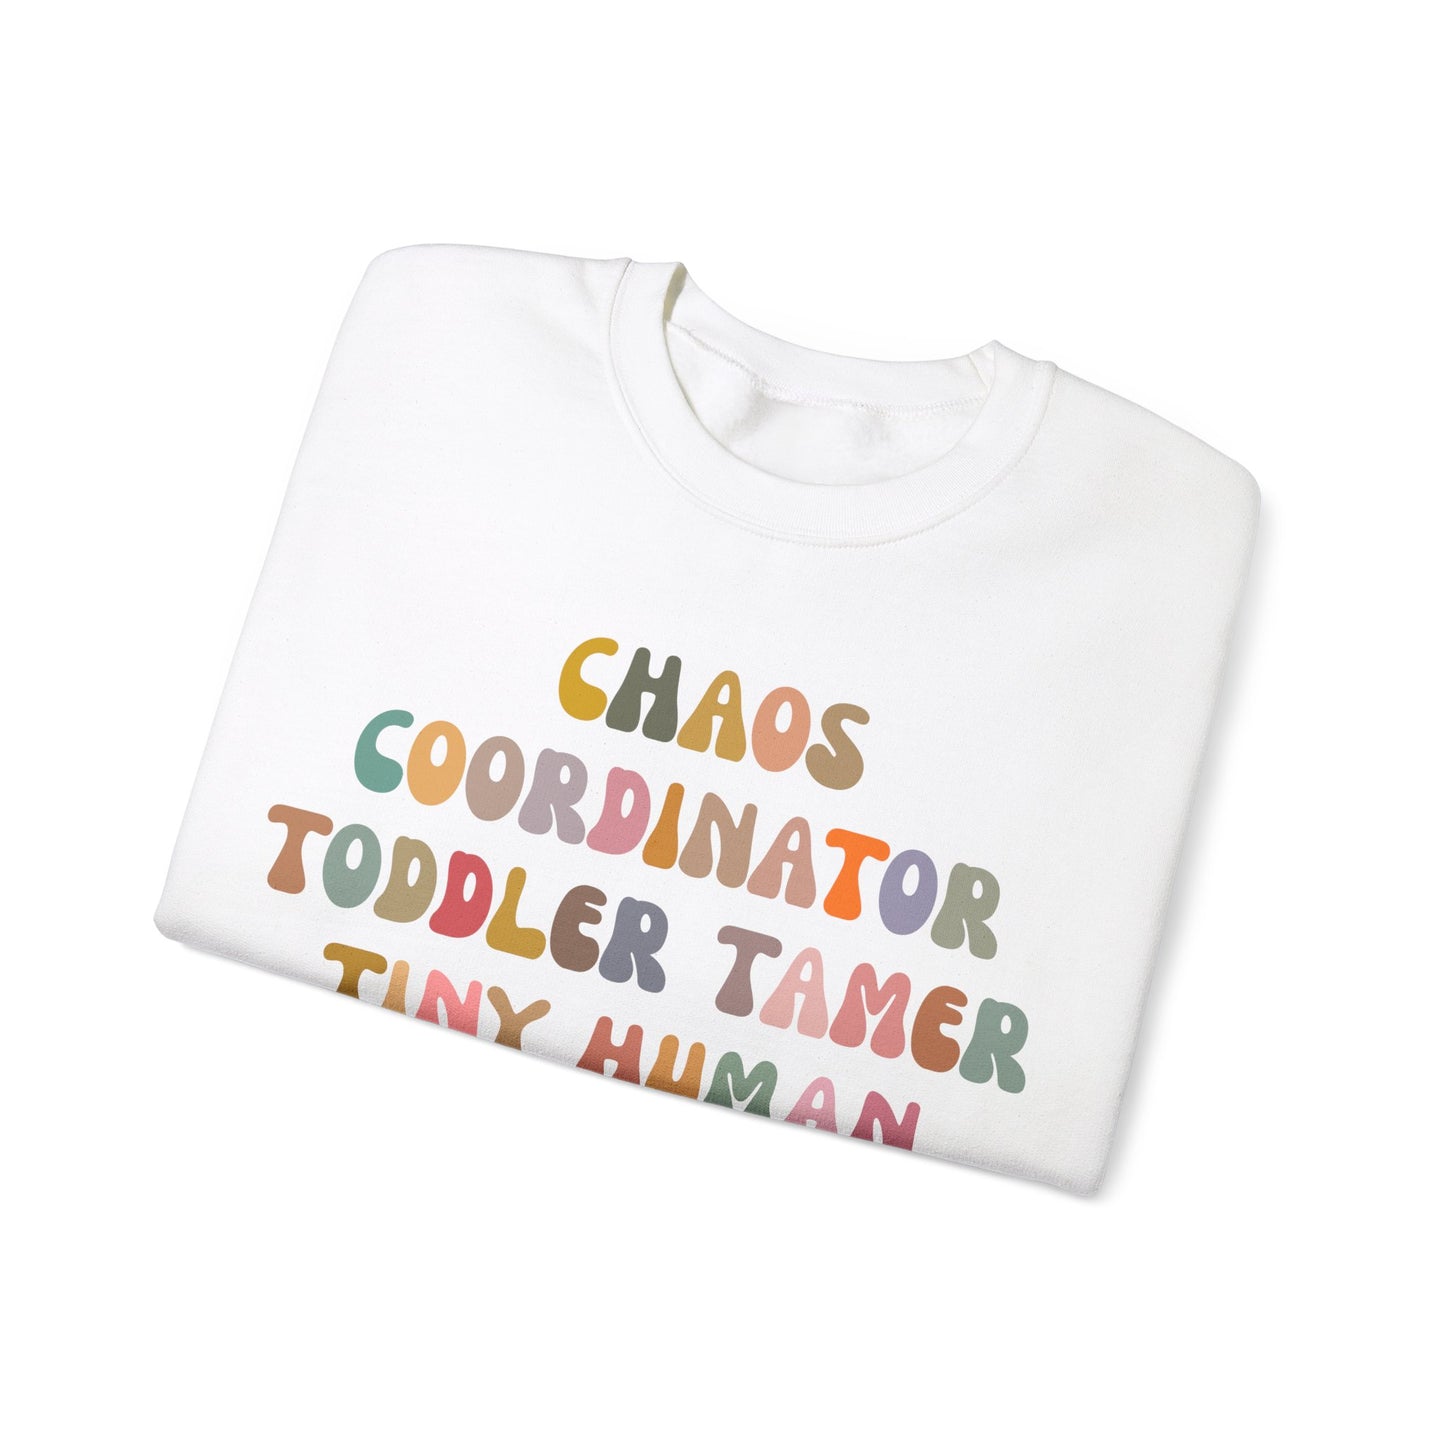 Chaos Coordinator Toddler Tamer Tiny Human Herder Sweatshirt, Kindergarten Teacher Sweatshirt, Toddler Sweatshirt, Mom Sweatshirt, S1283